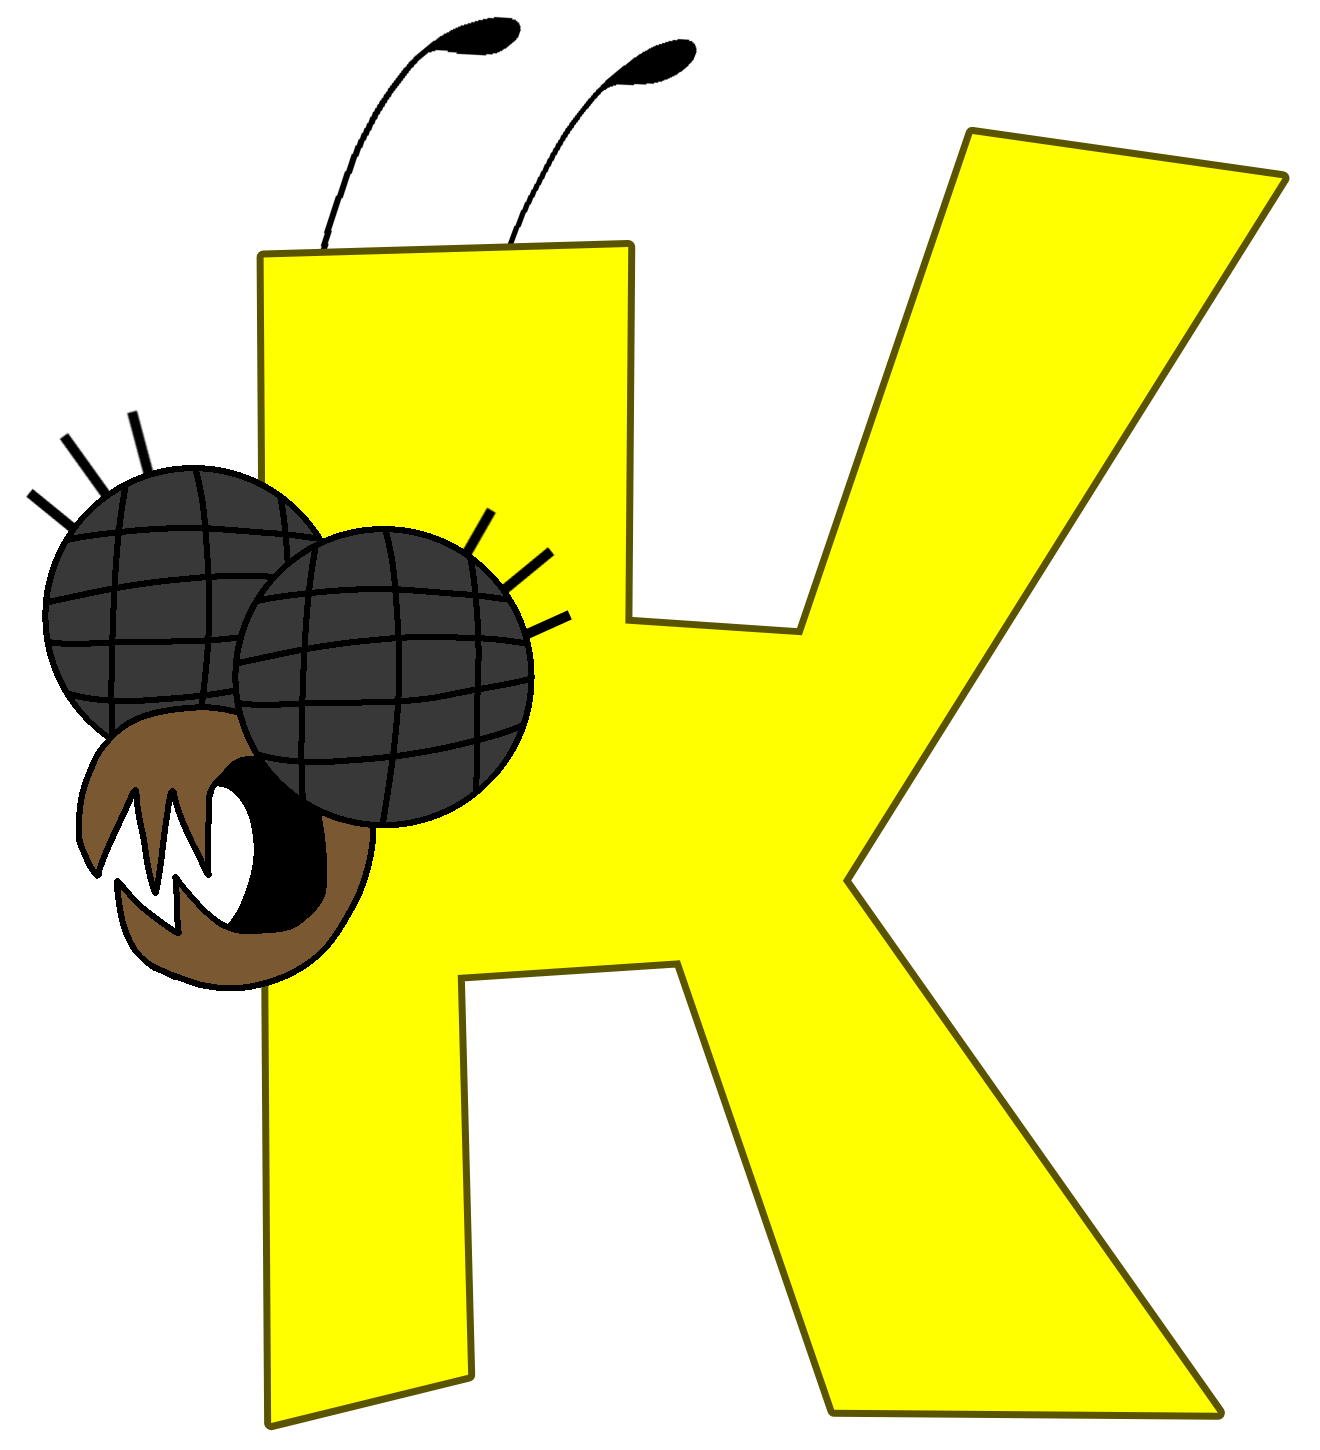 K (Alphabet Lore) Stamp by skinnybeans17 on DeviantArt